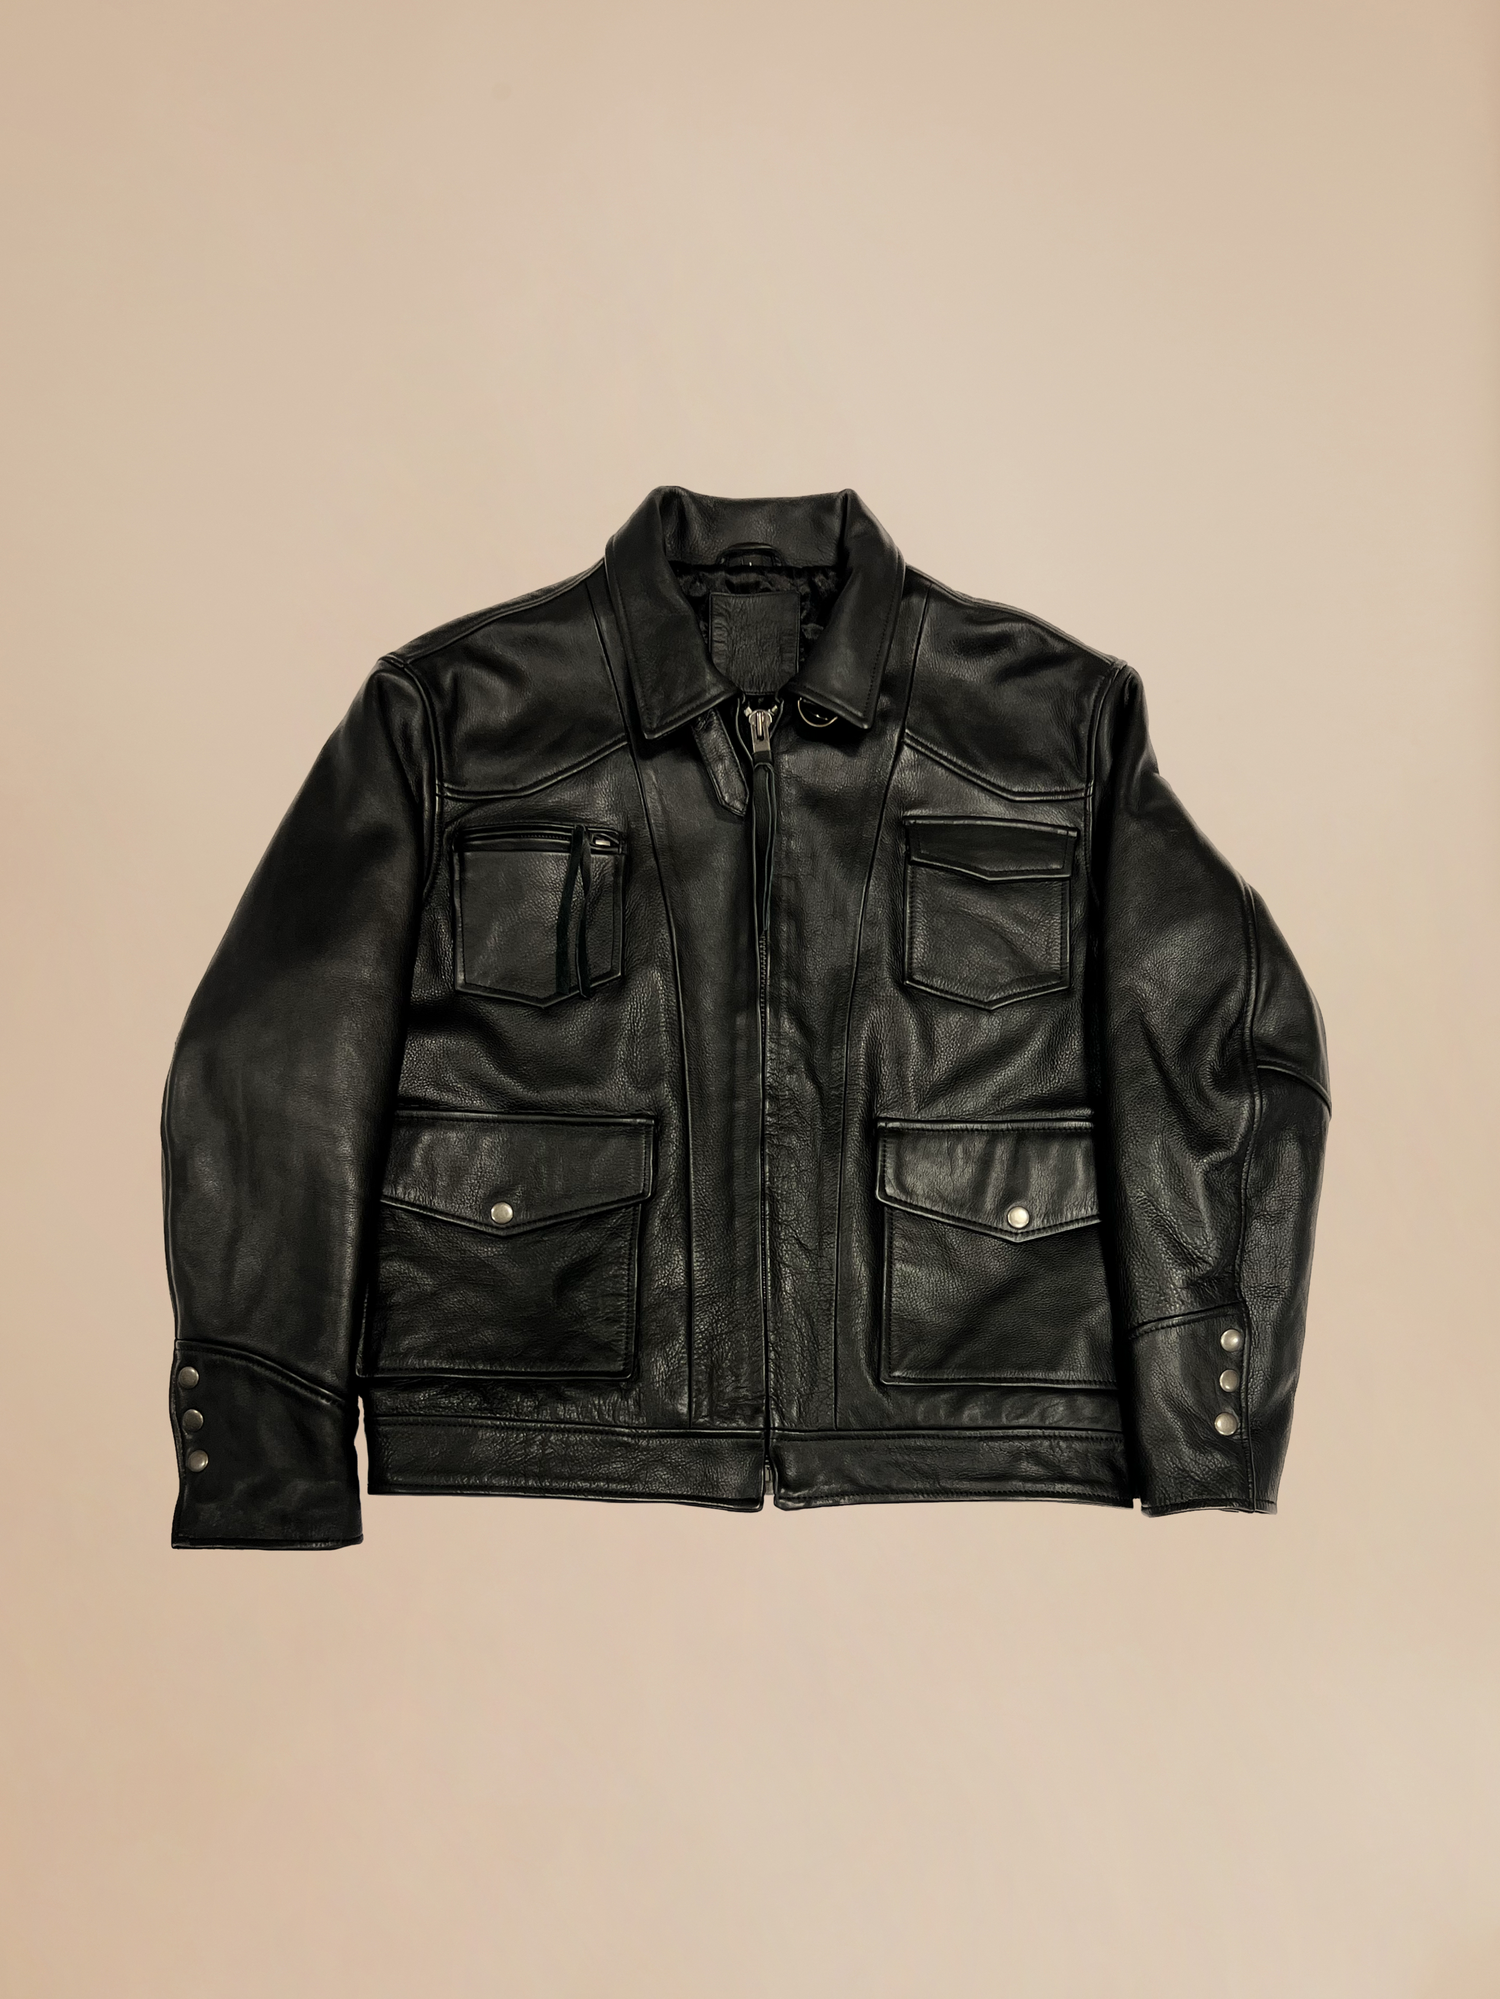 Sample 14 (Leather Pocket Jacket)